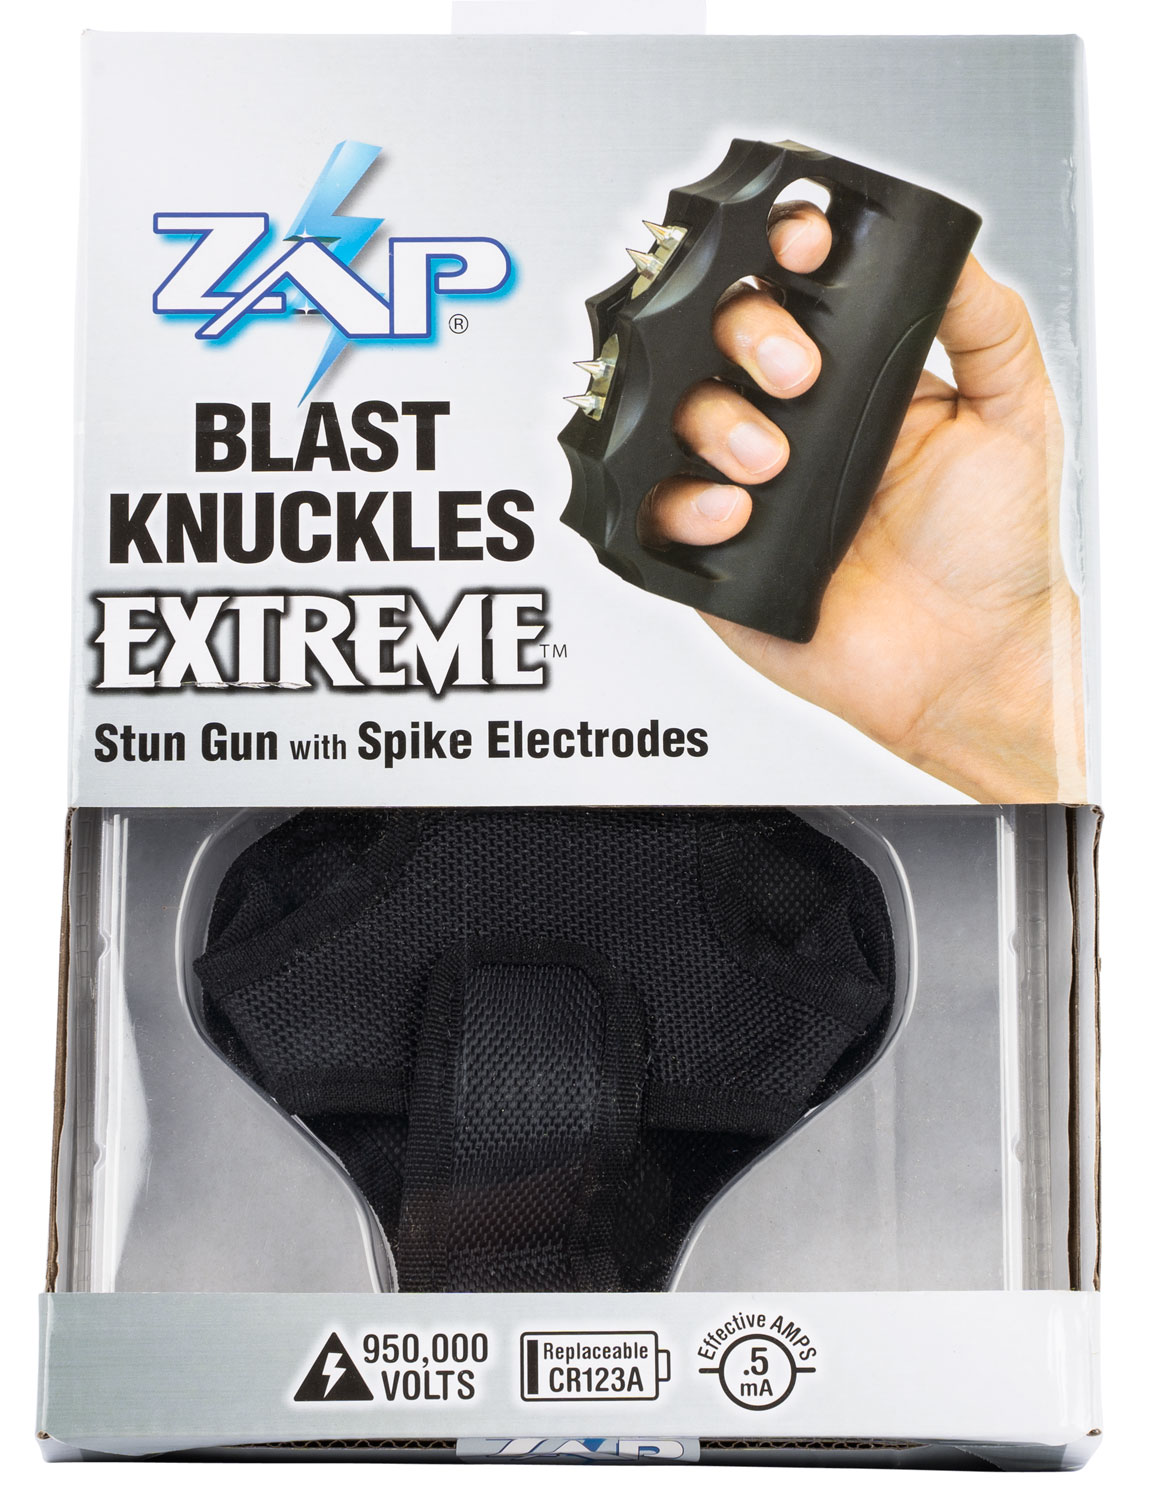 PSP ZAP STUN GUN BLAST KNUCKLE EXTREME 950,000 VOLTS BLACK